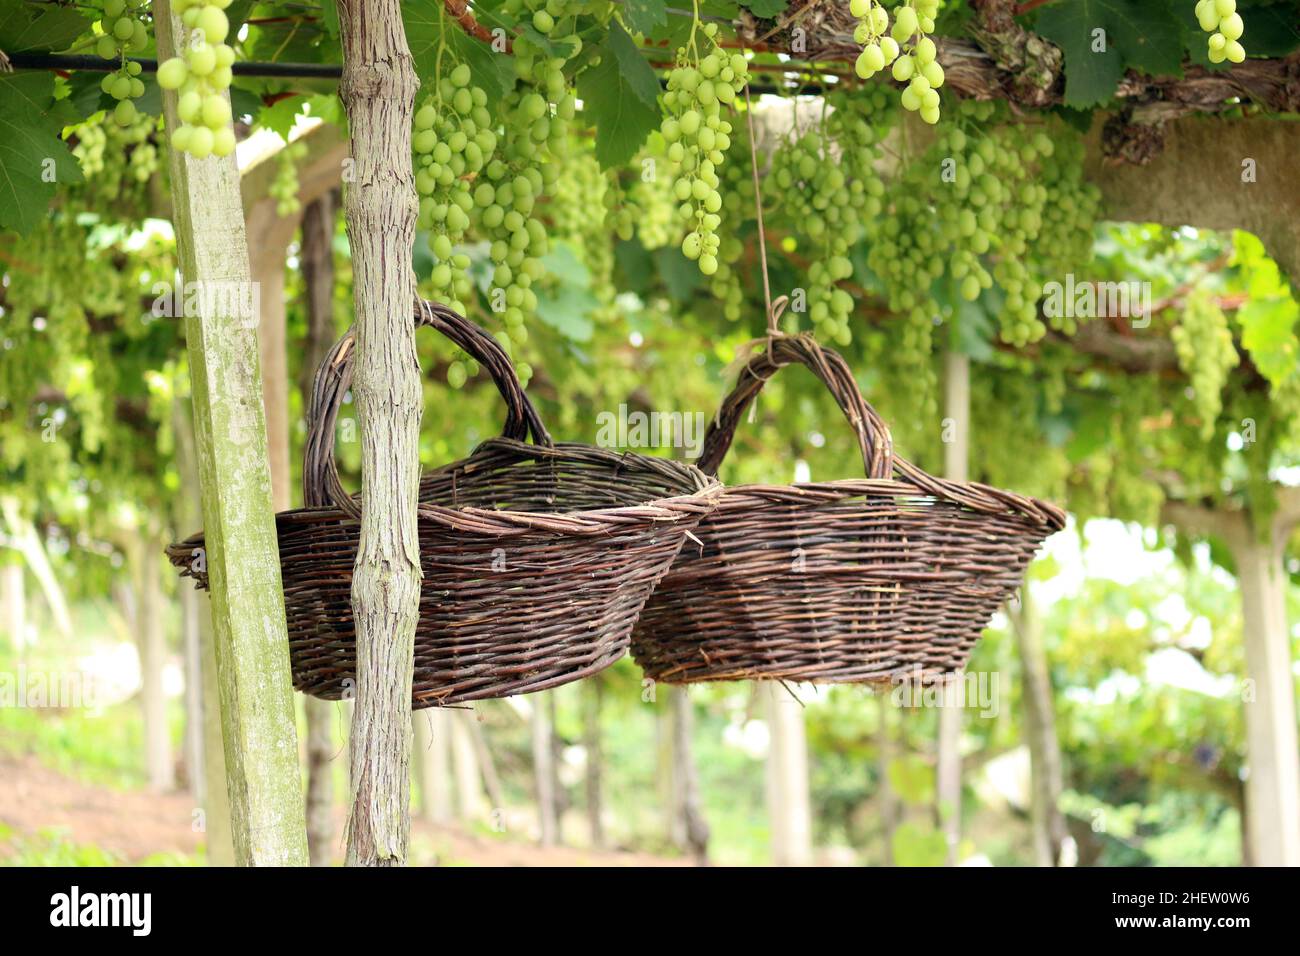 Sul retro di un immenso vigneto, tra i grandi grappoli di uva verde, sono appesi due cesti fatti a mano, prodotti con vimini. Foto Stock